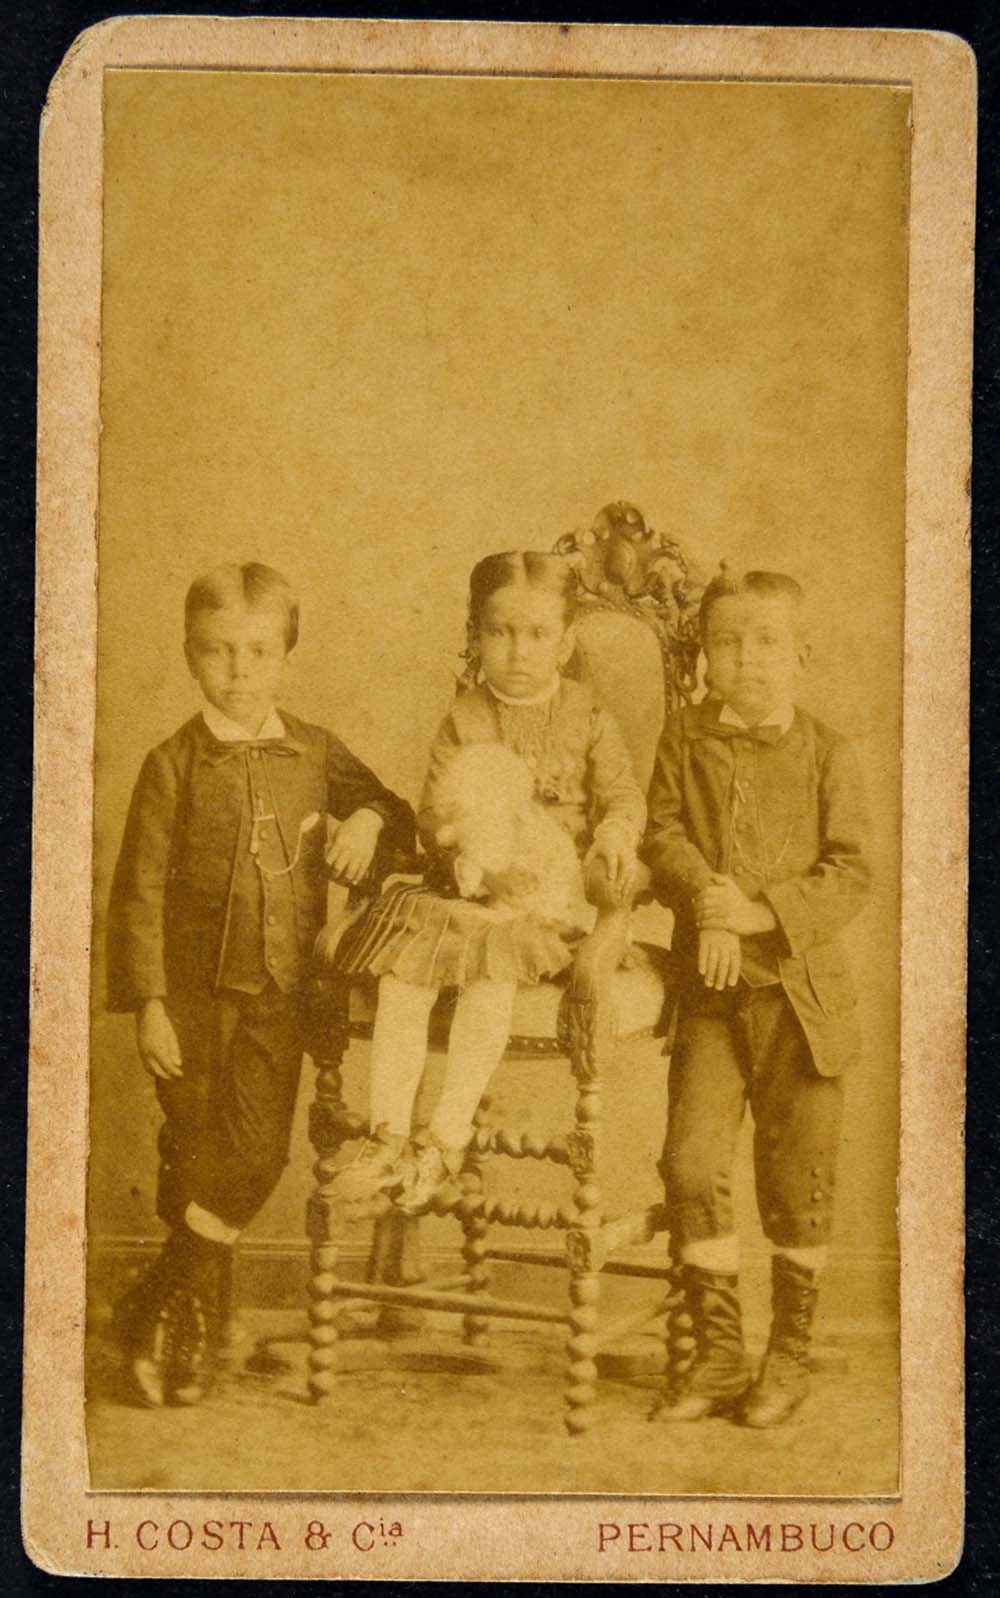 Três crianças: uma menina está no centro, sentada e segurando um brinquedo, enquanto dois meninos estão em pé, um em cada lado dela.